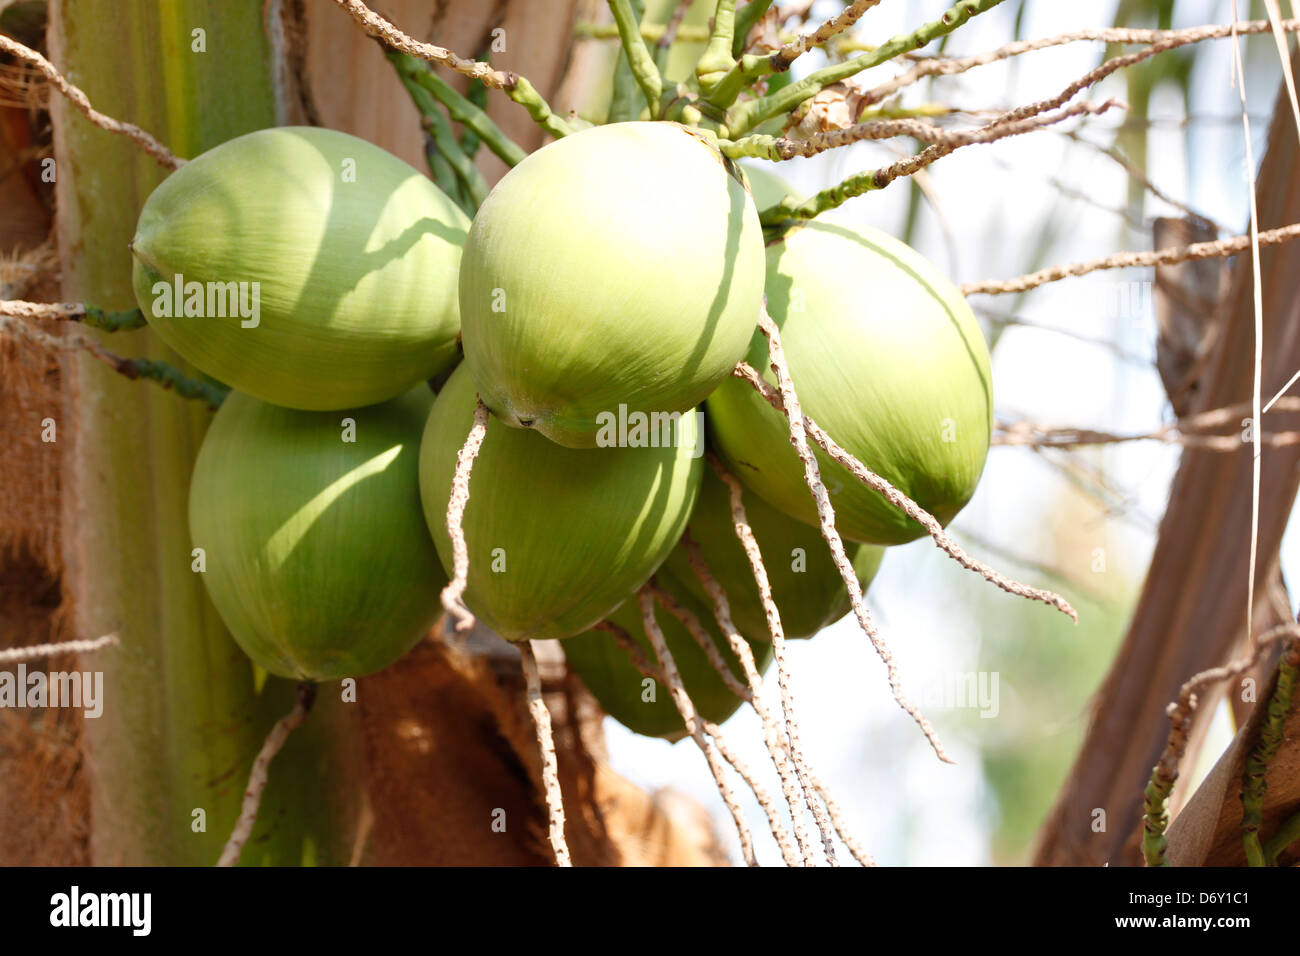 Der junge Kokosnuss, sie haben eine grüne Farbe. Stockfoto